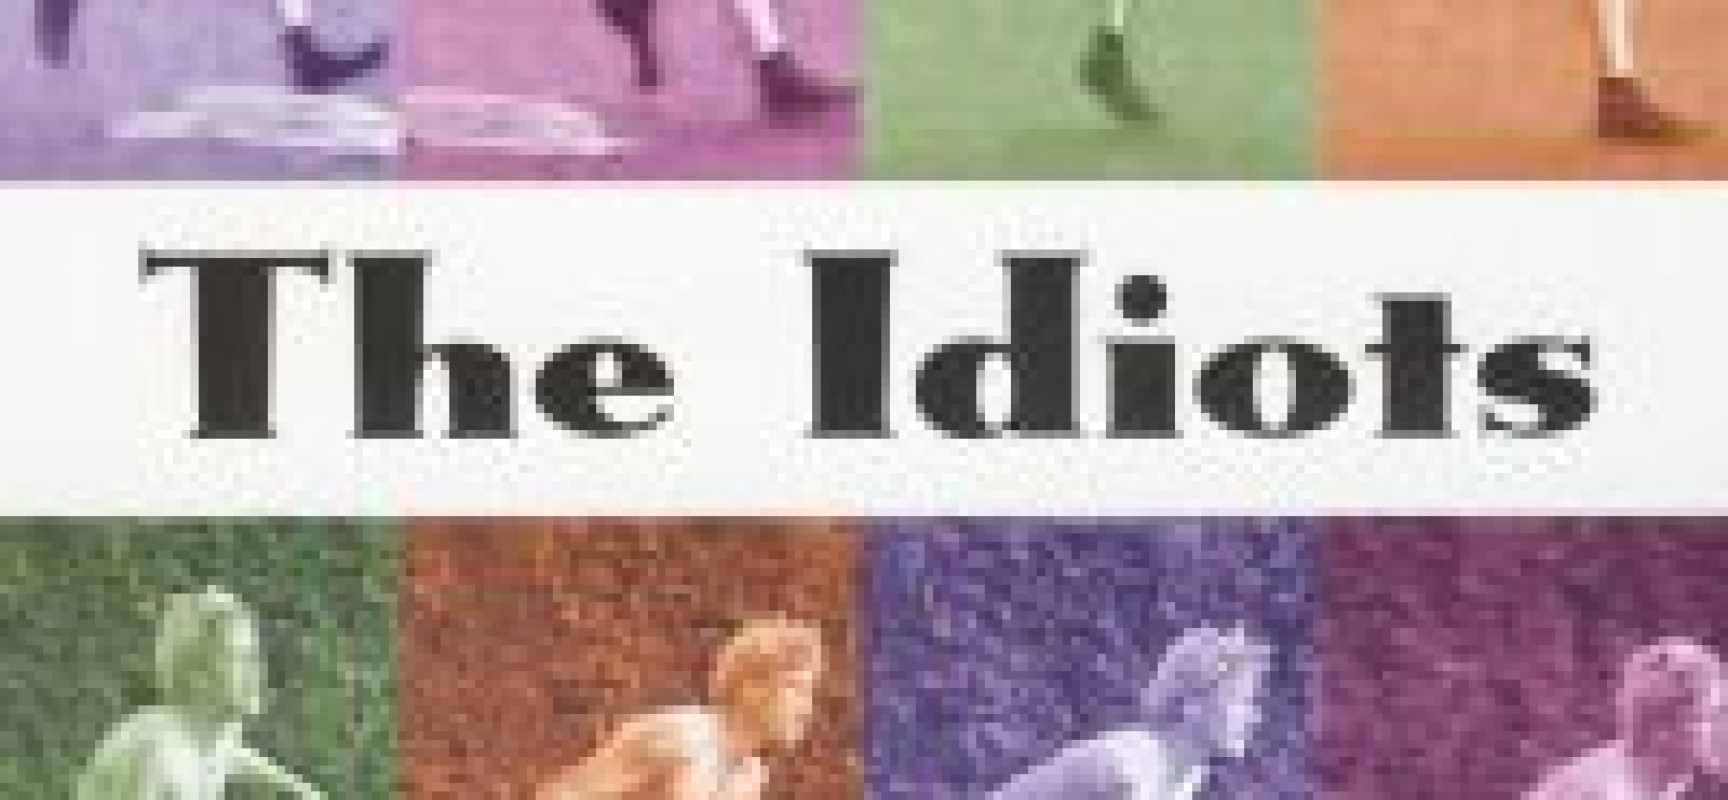 « Les Idiots » de Lars Von Trier – Cycle de projections sur les dynamiques collectives